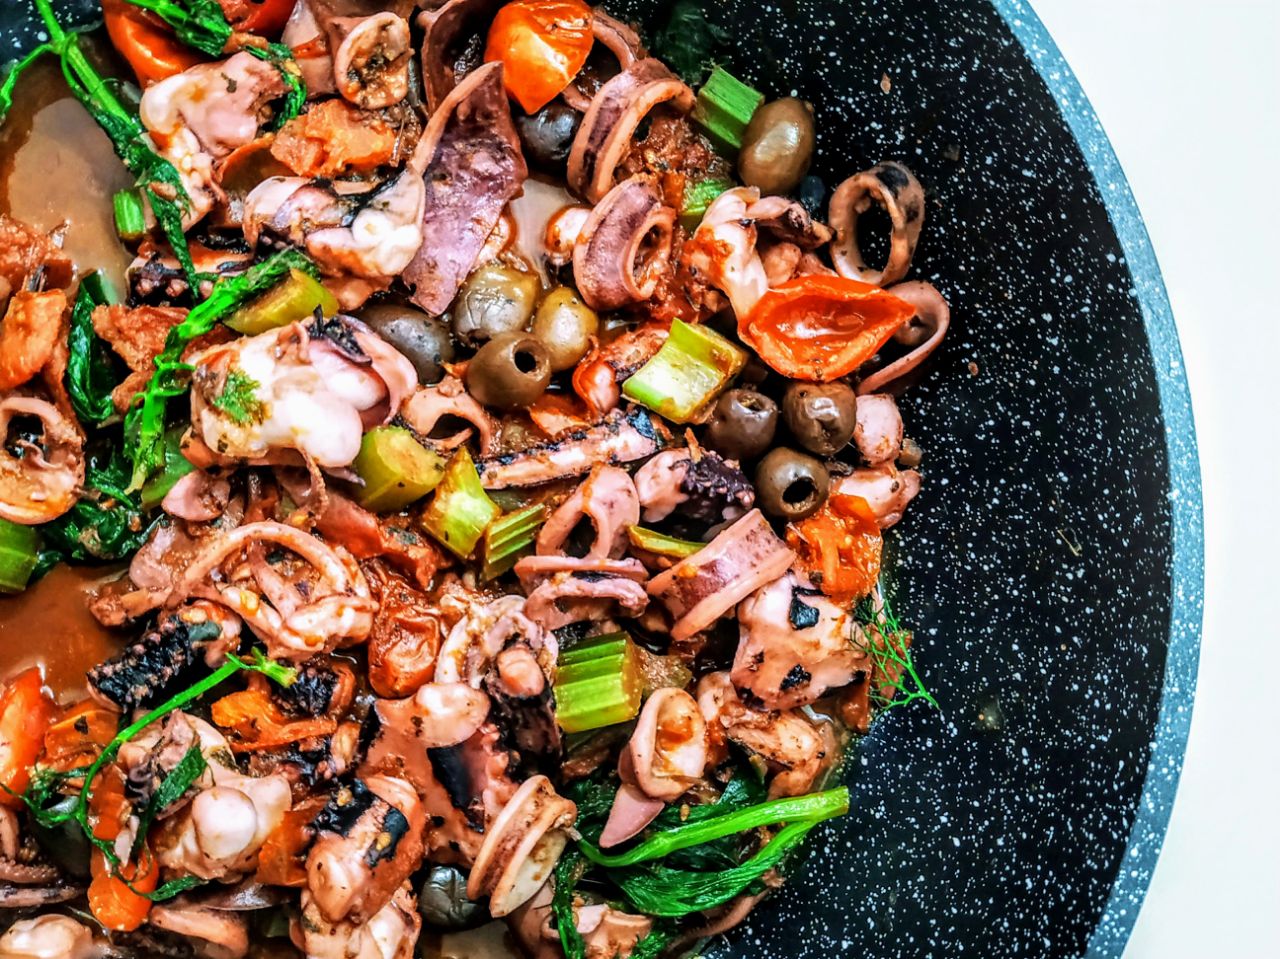 Secondi piatti a base di pesce: calamari in umido con pomodorini sedano olio extravergine d'oliva e olive all'abruzzese!